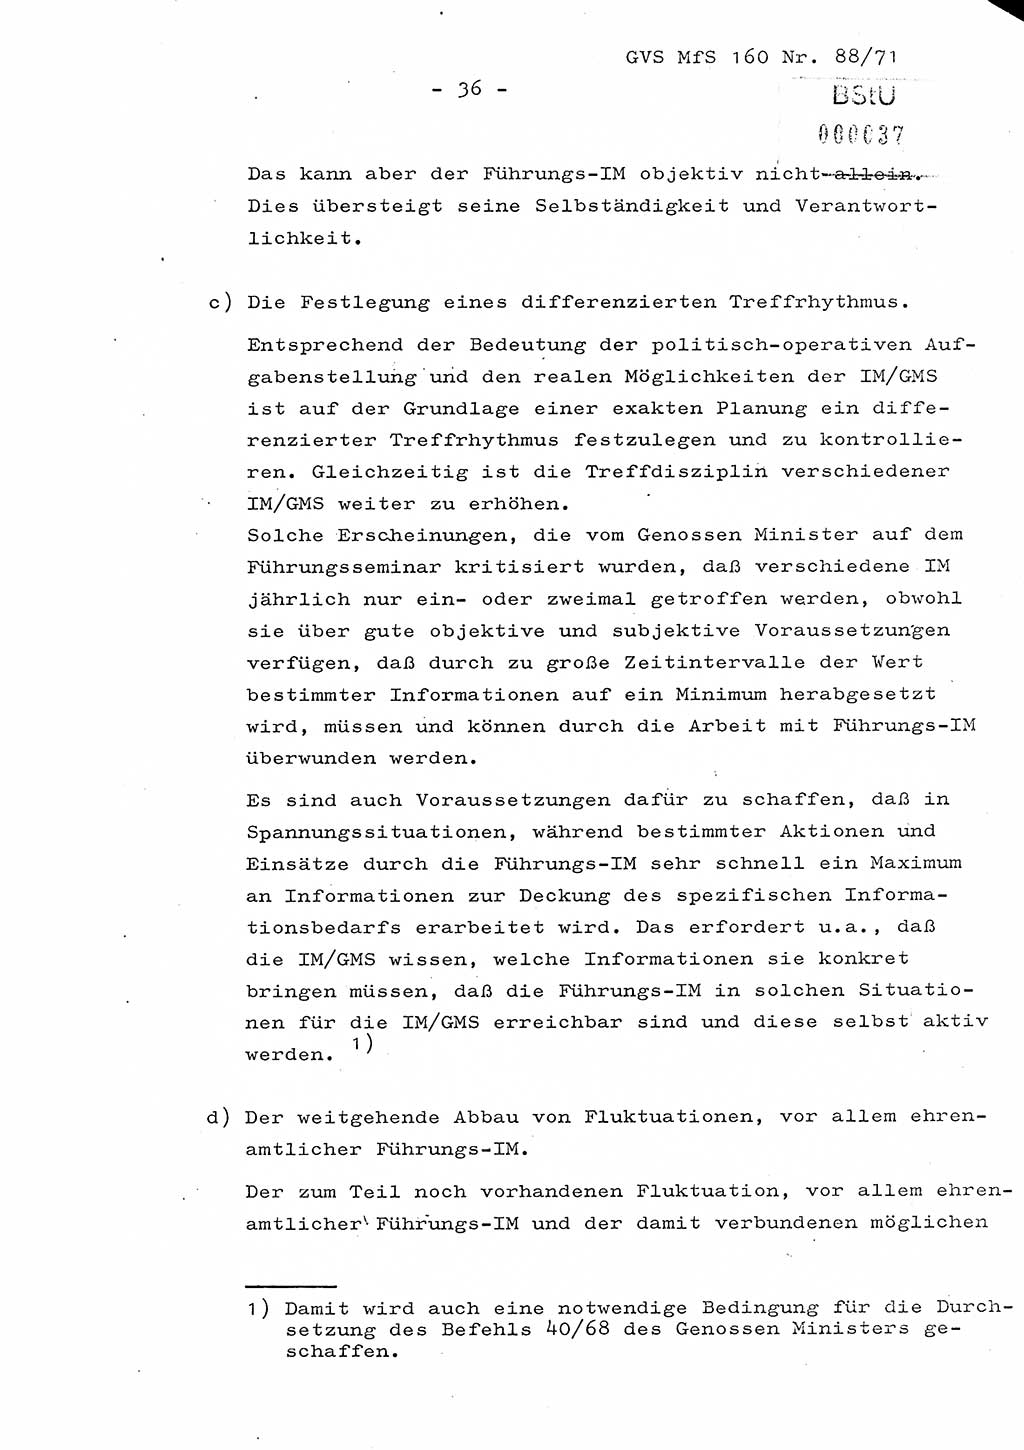 Dissertation Oberstleutnant Josef Schwarz (BV Schwerin), Major Fritz Amm (JHS), Hauptmann Peter Gräßler (JHS), Ministerium für Staatssicherheit (MfS) [Deutsche Demokratische Republik (DDR)], Juristische Hochschule (JHS), Geheime Verschlußsache (GVS) 160-88/71, Potsdam 1972, Seite 36 (Diss. MfS DDR JHS GVS 160-88/71 1972, S. 36)